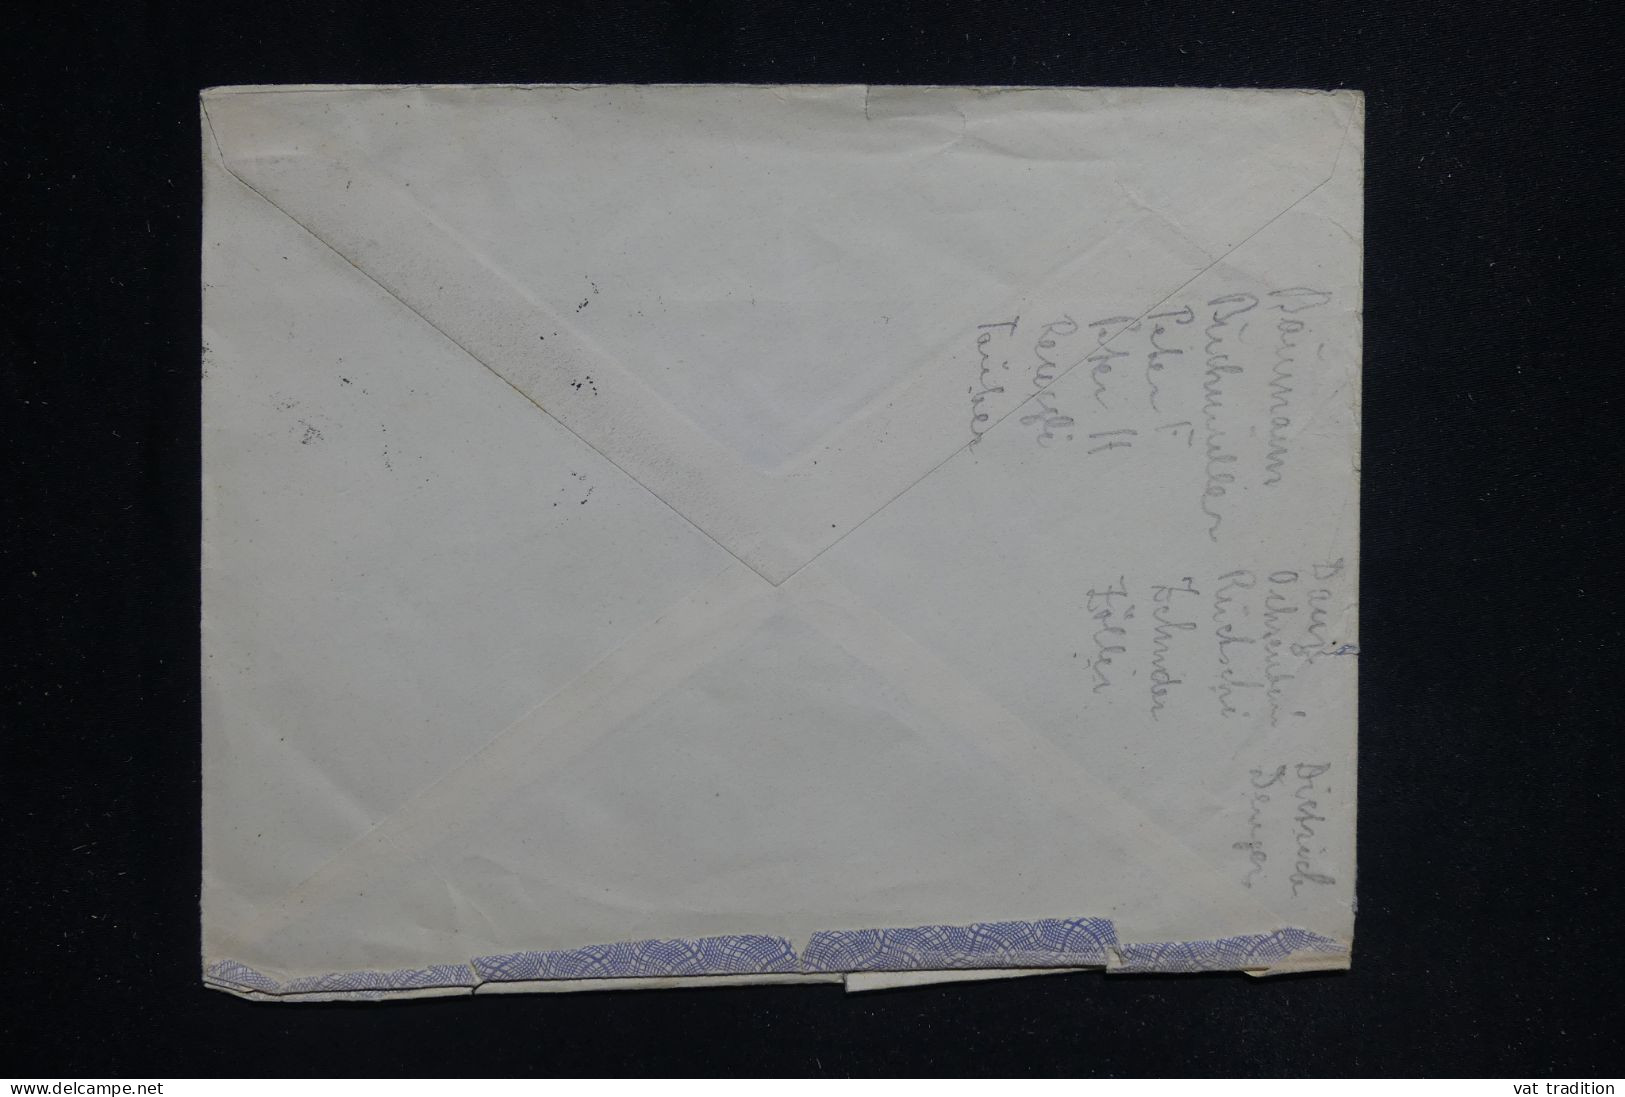 TURQUIE - Enveloppe Commerciale De Istanbul Pour La Suisse En 1950 - L 144709 - Cartas & Documentos